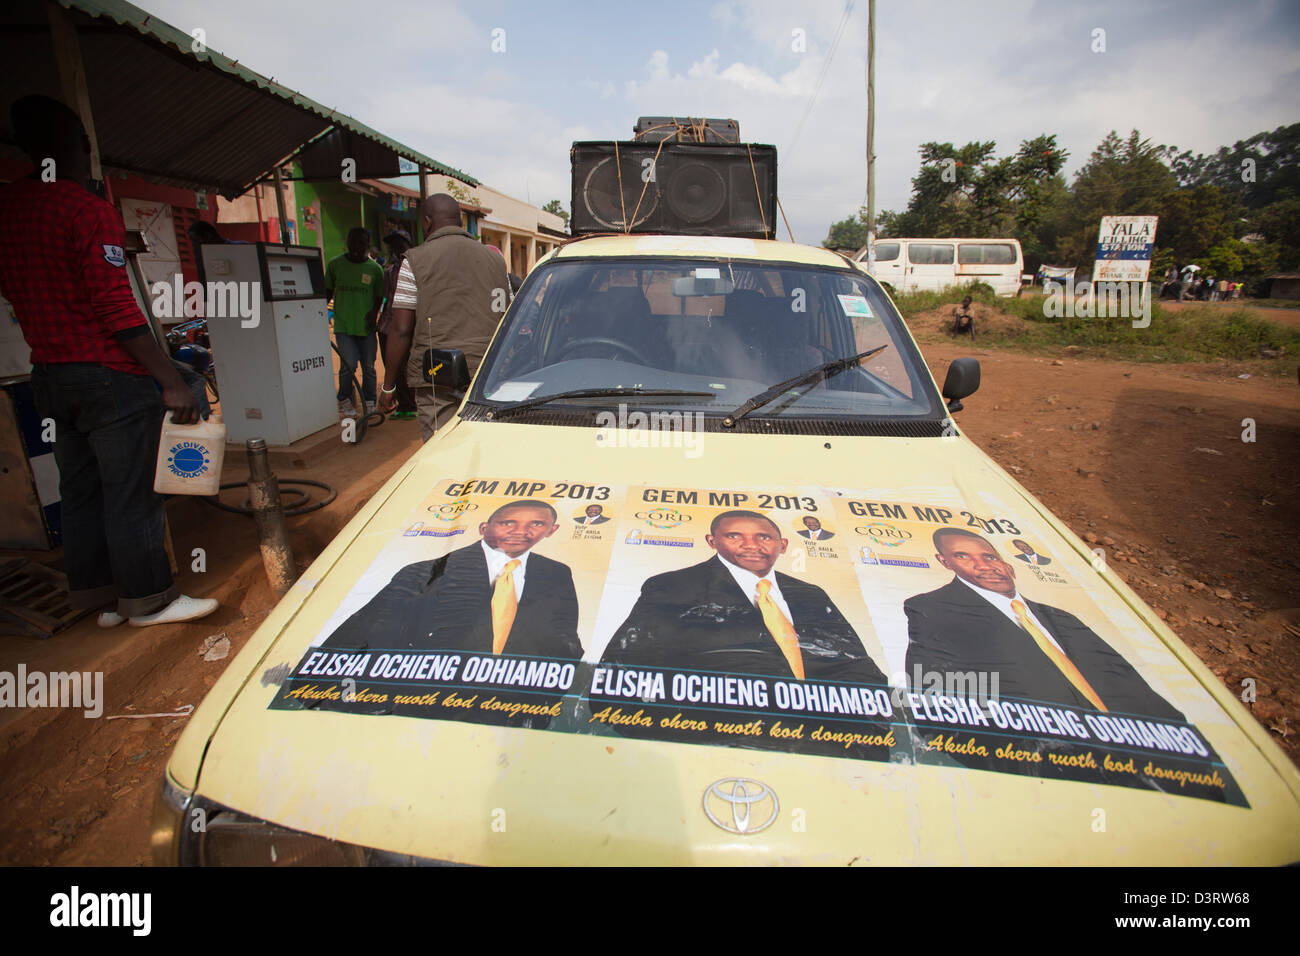 Cofano della vettura di campagna per la corda MP candidato Eliseo Ochieng Odhiambo, Yala, nella provincia di Nyanza, Kenya, Febbraio 2013 Foto Stock